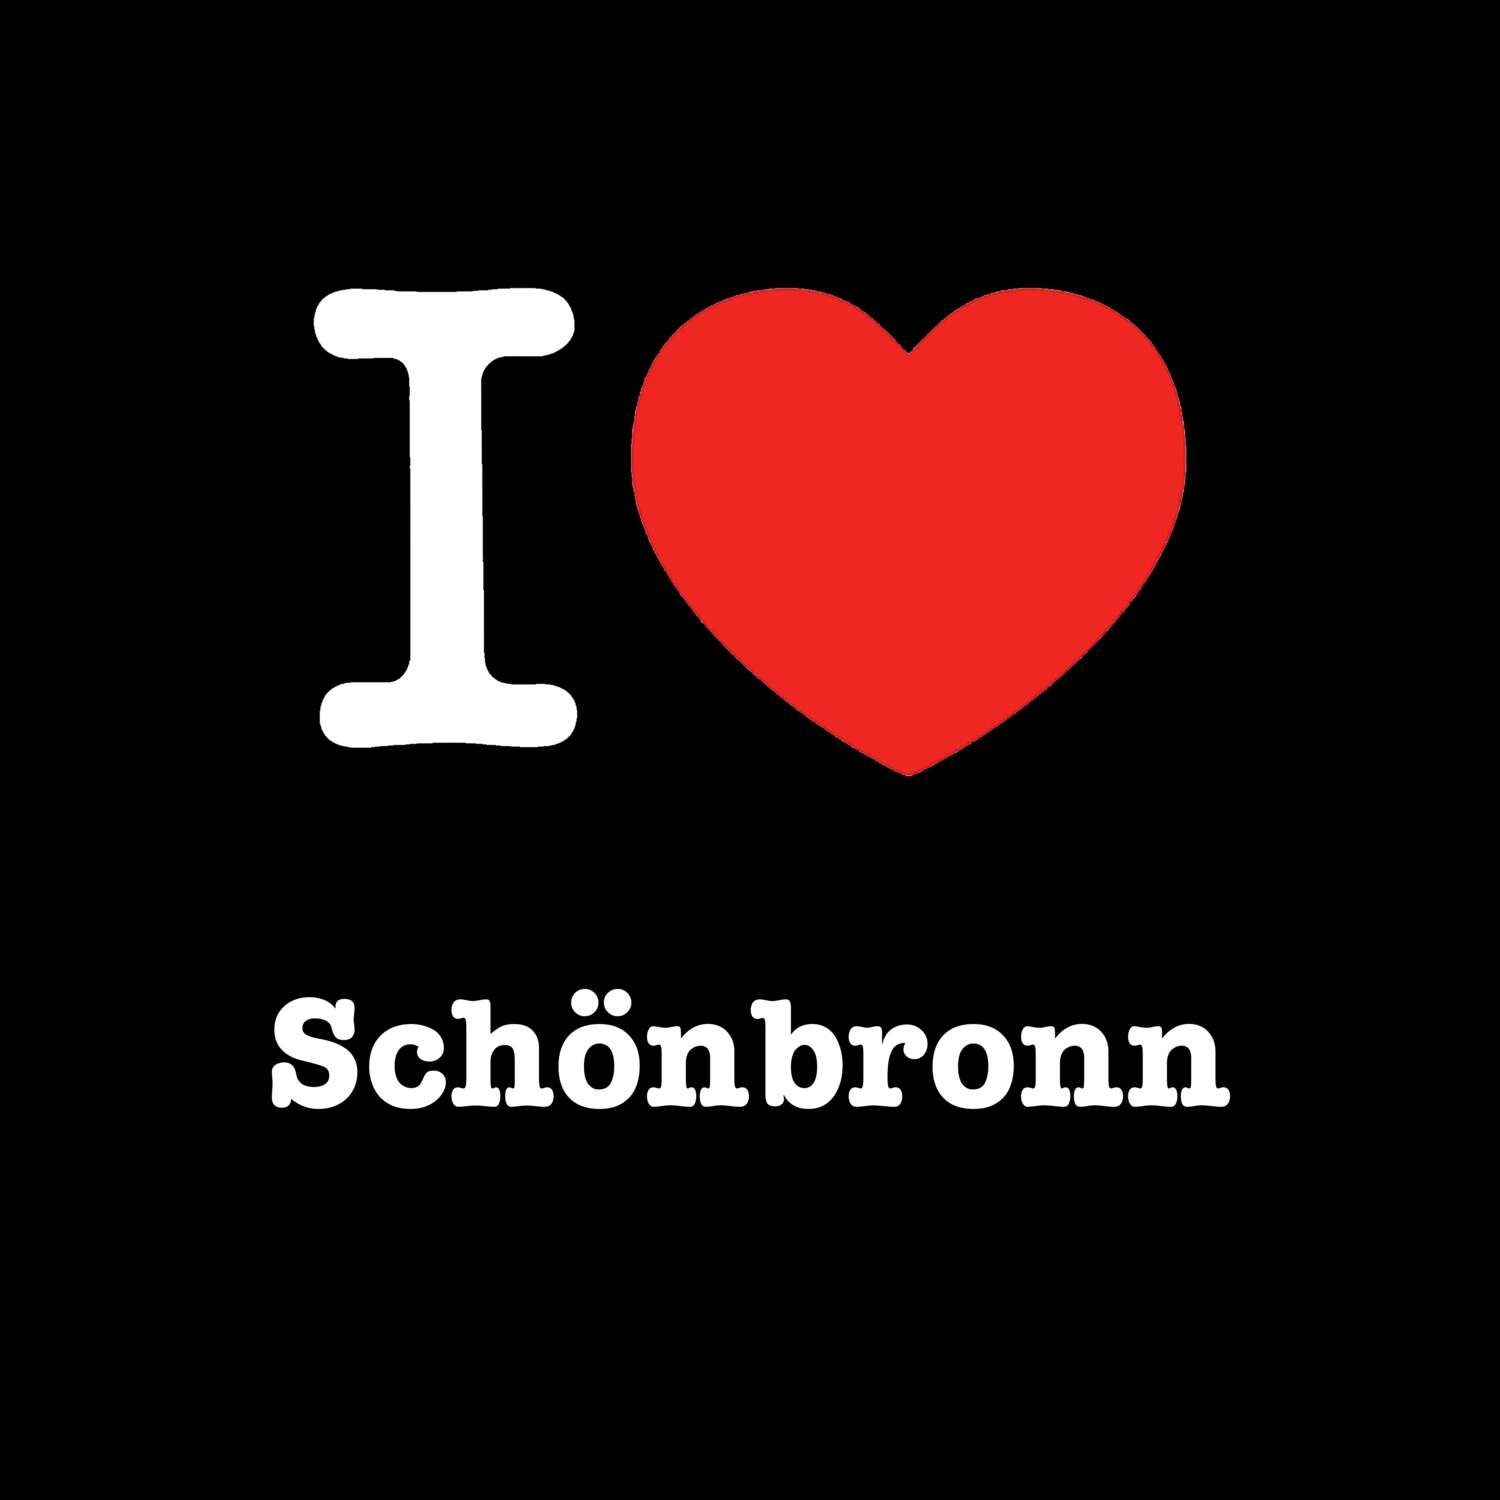 Schönbronn T-Shirt »I love«